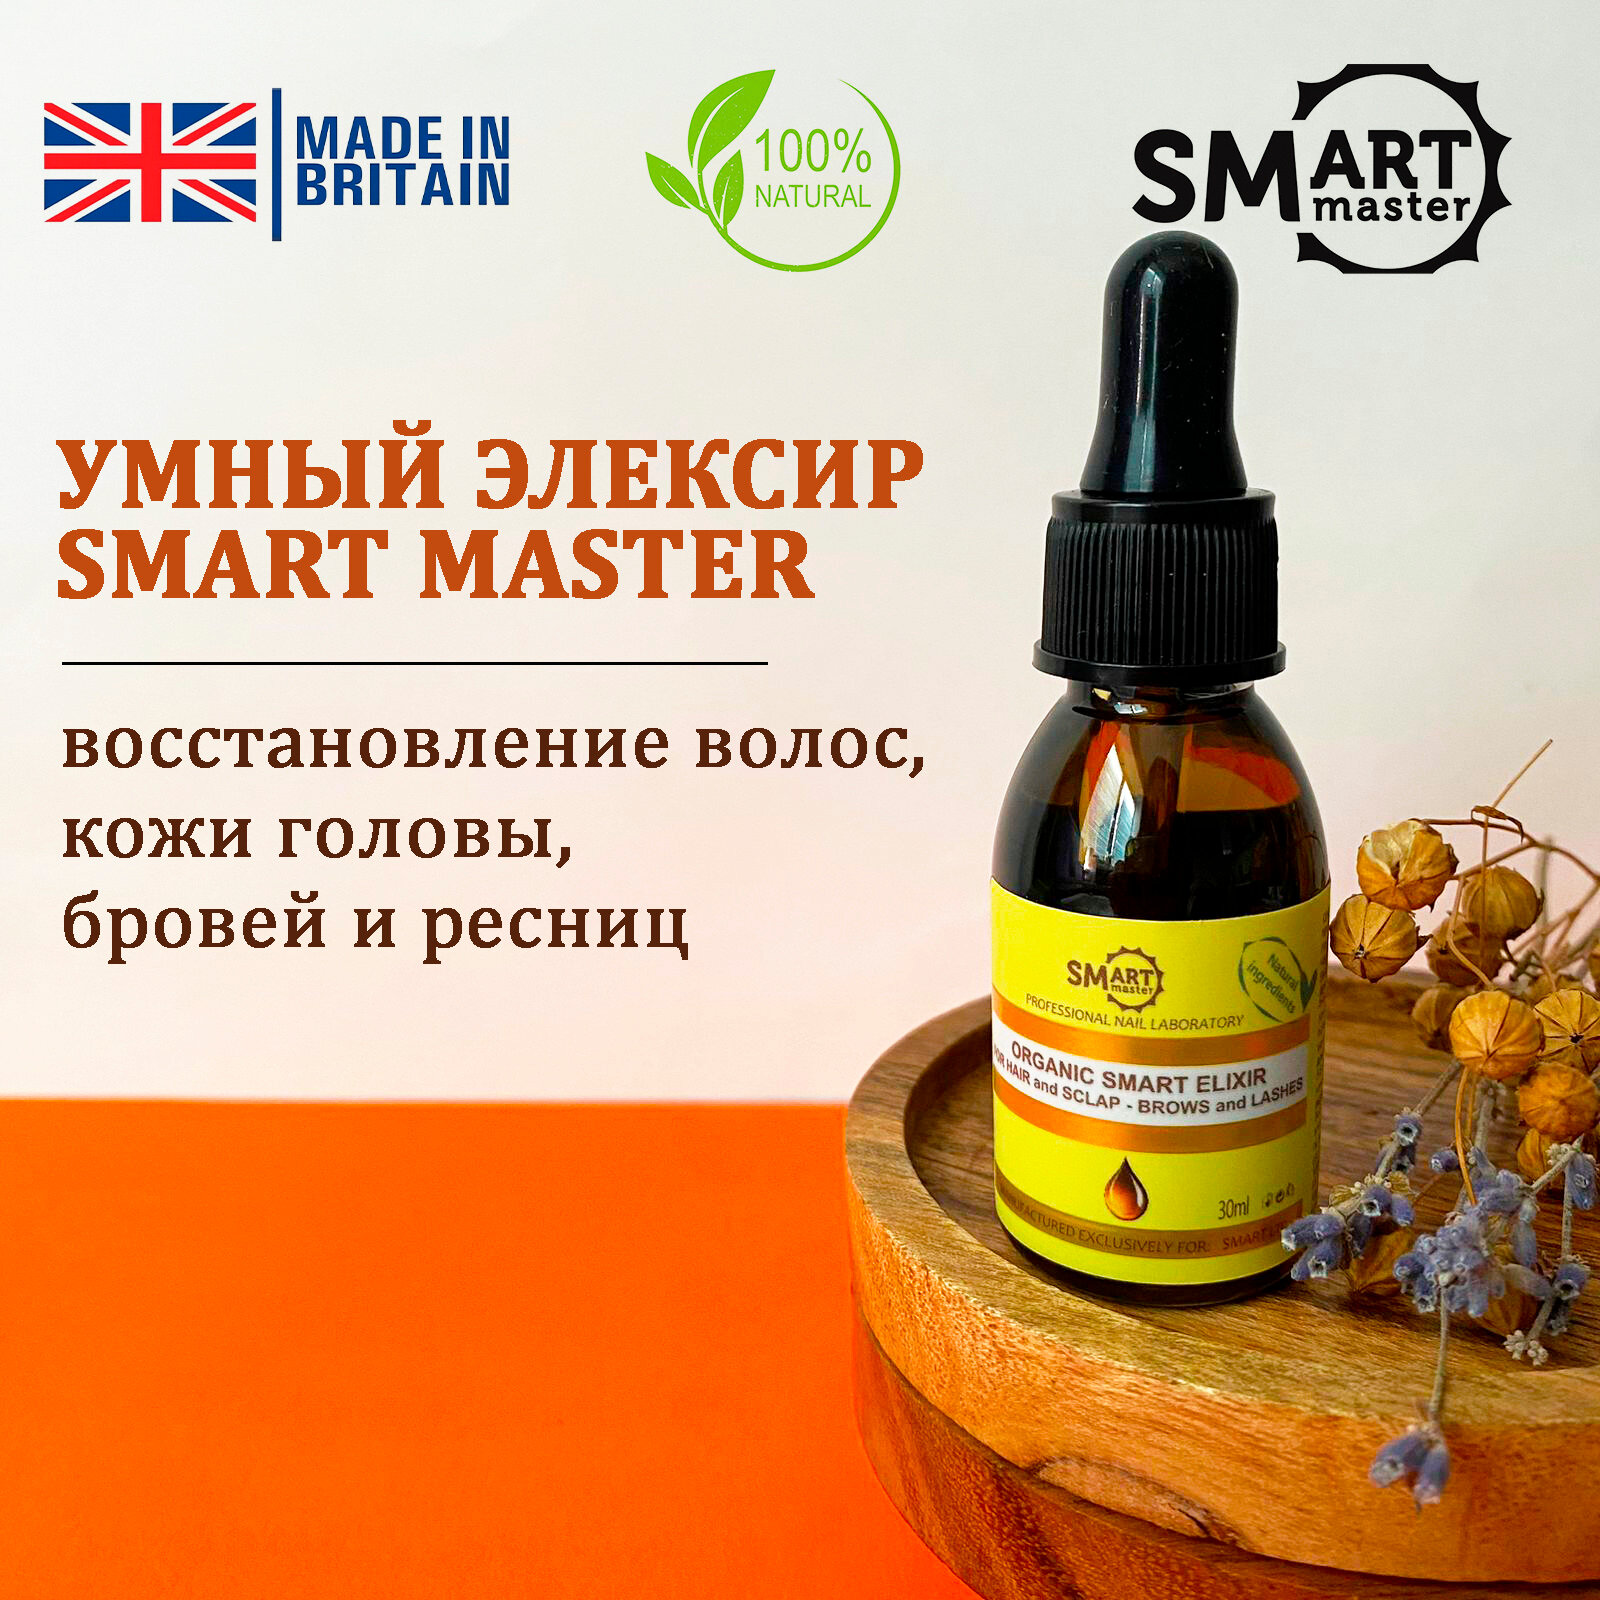 Smart Master Умный эликсир для восстановления волос, кожи головы, бровей и ресниц, 30мл Смарт мастер Organic Elixer